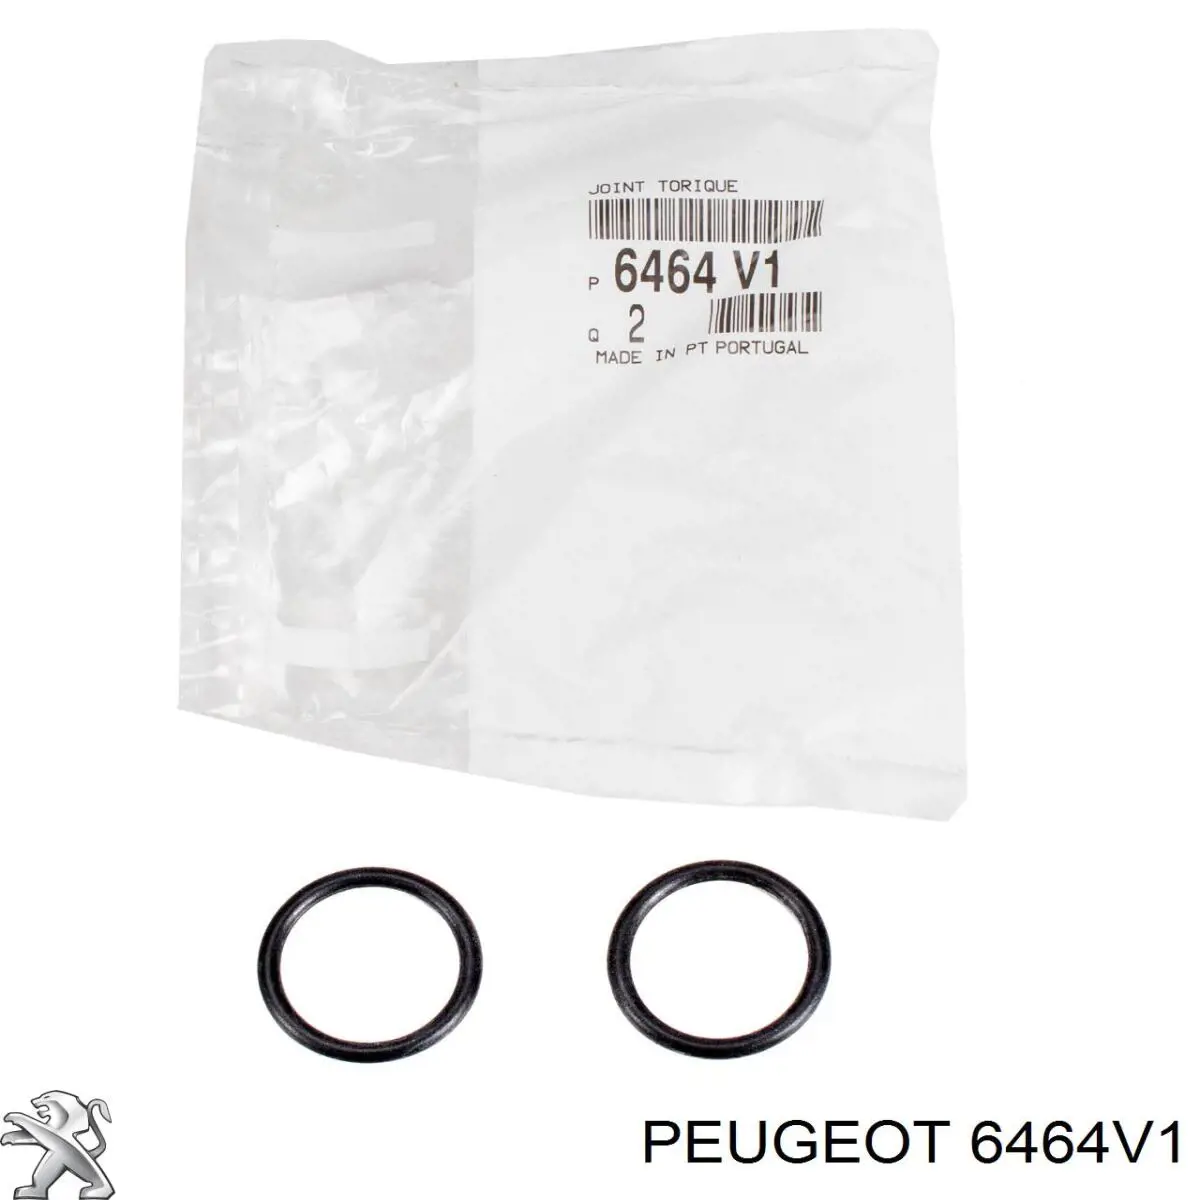 00006464V1 Peugeot/Citroen anillo obturador, tubo de radiador de calefacción